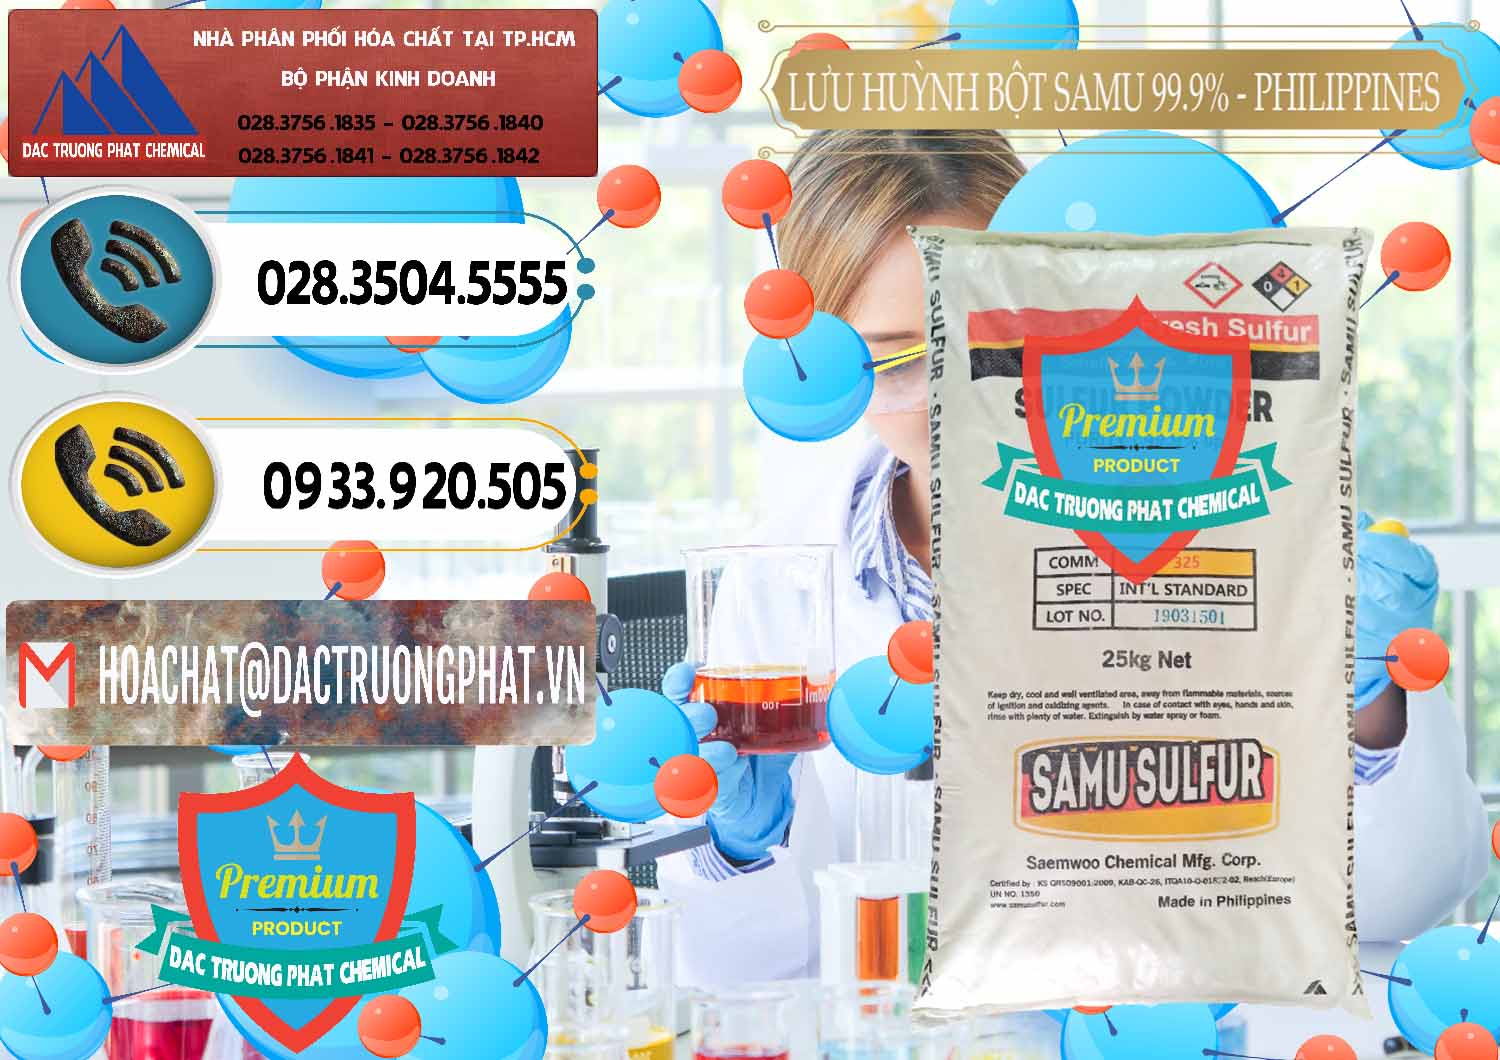 Kinh doanh - bán Lưu huỳnh Bột - Sulfur Powder Samu Philippines - 0201 - Cty kinh doanh _ cung cấp hóa chất tại TP.HCM - hoachatdetnhuom.vn